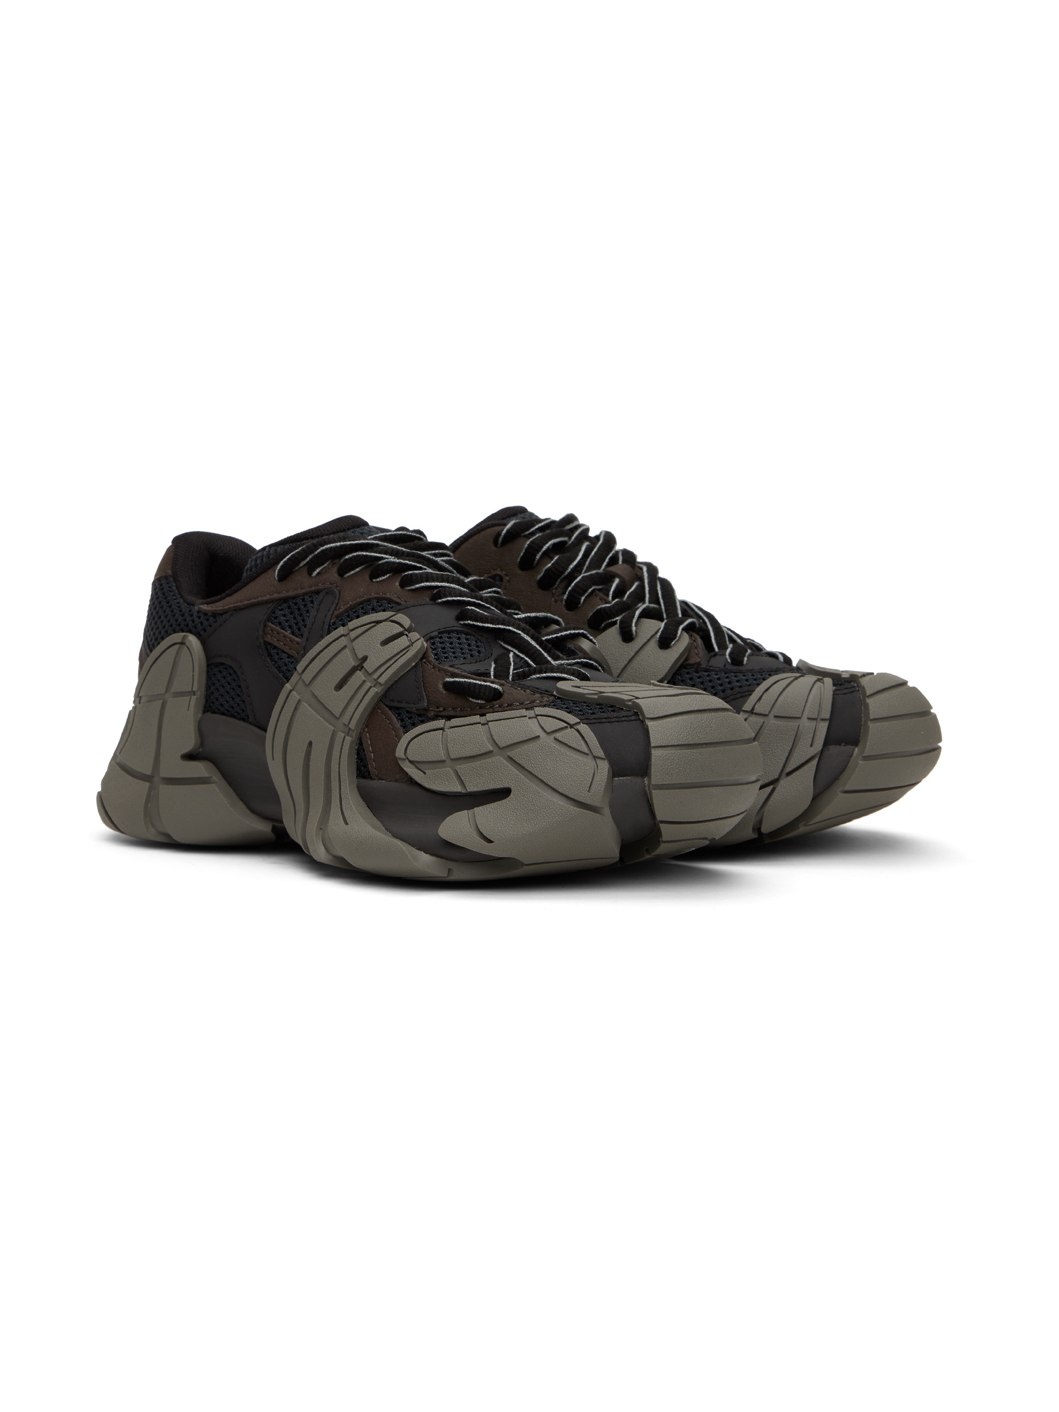 Brown & Gray Tormenta Sneakers - 4